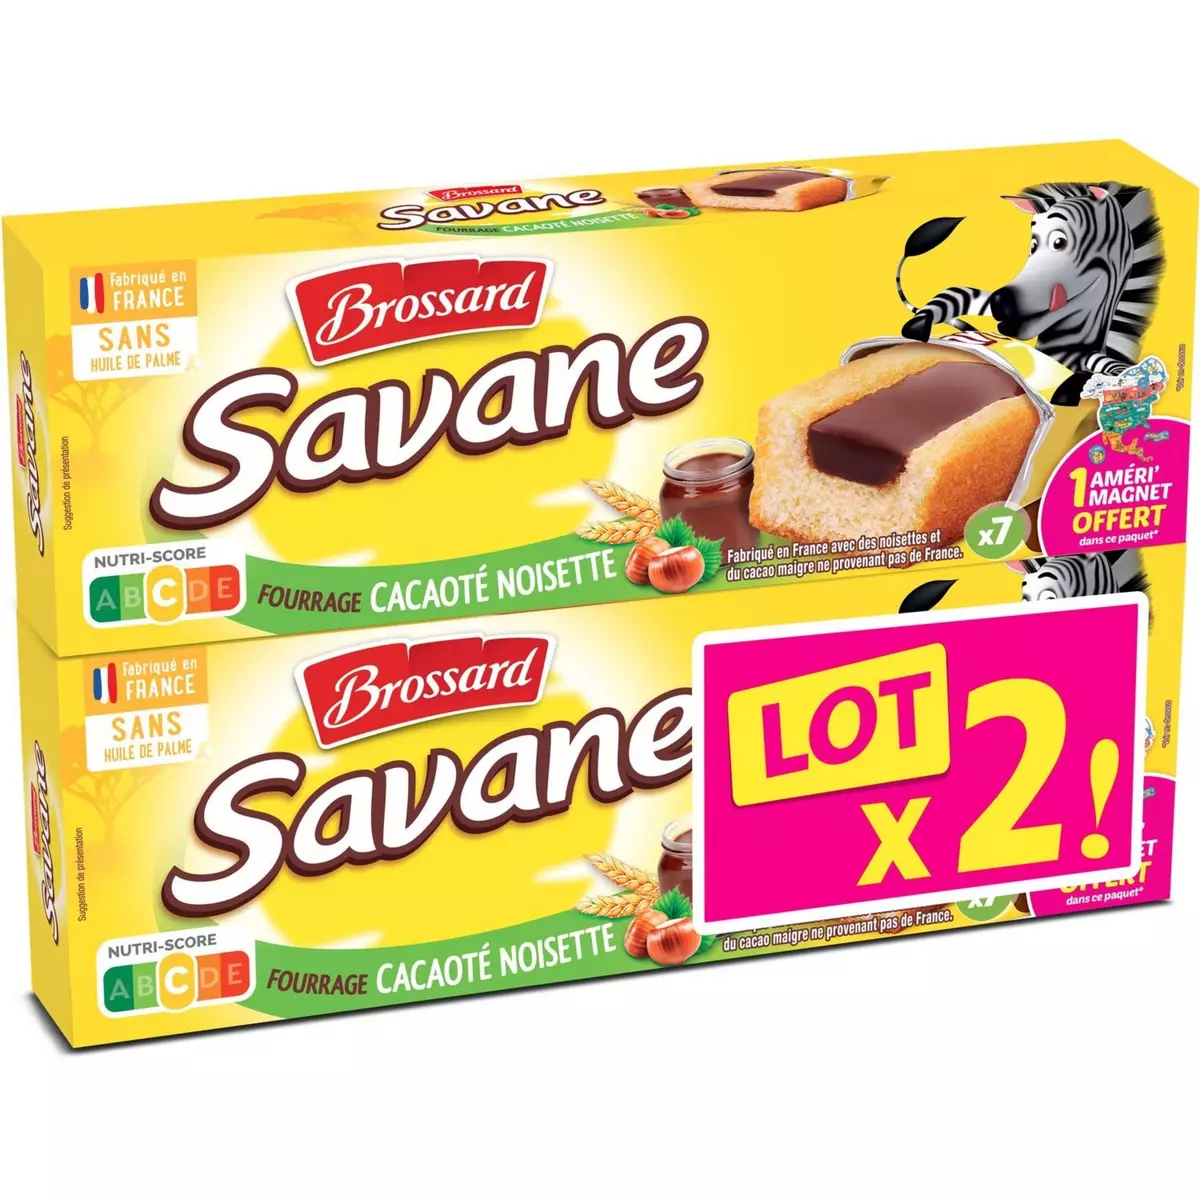 BROSSARD Savane Gâteaux fourrage cacaoté noisette sachet fraîcheur  7 pièces  189g